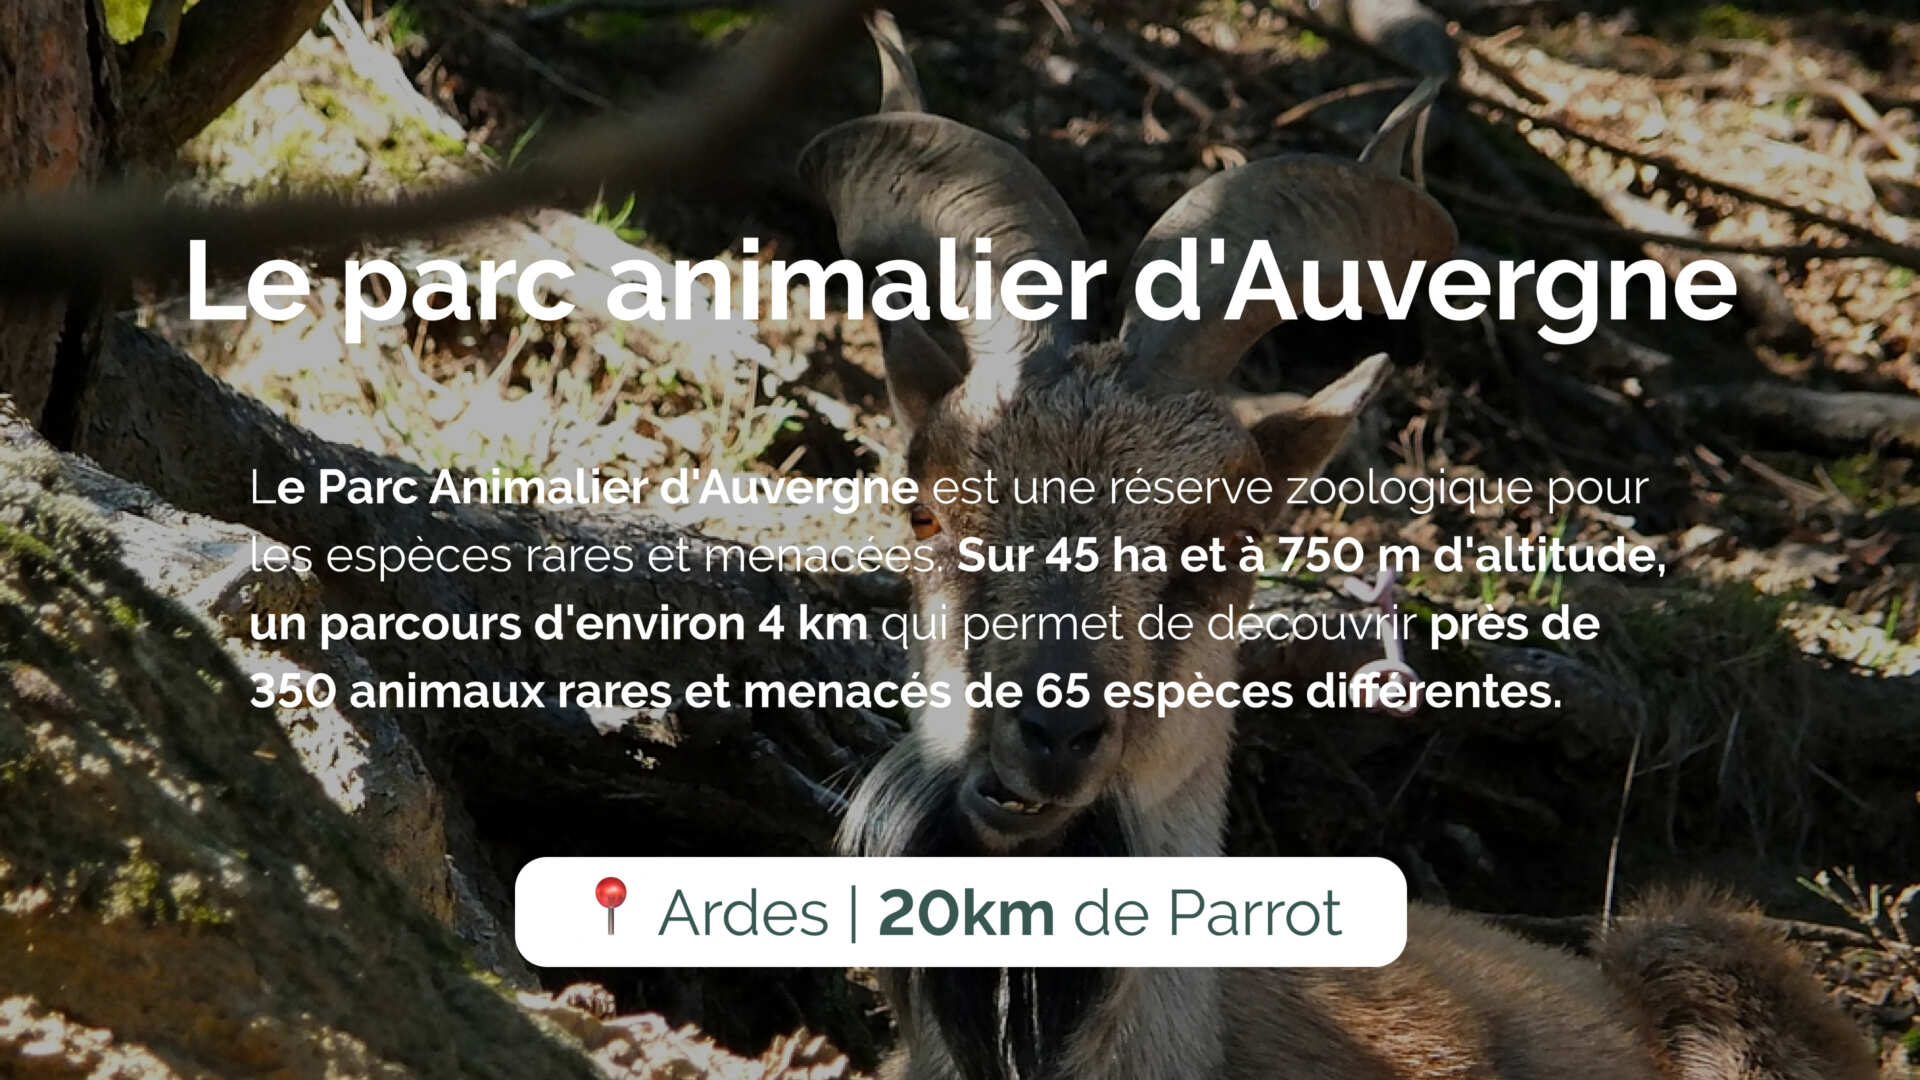 Le parc animalier d'Auvergne